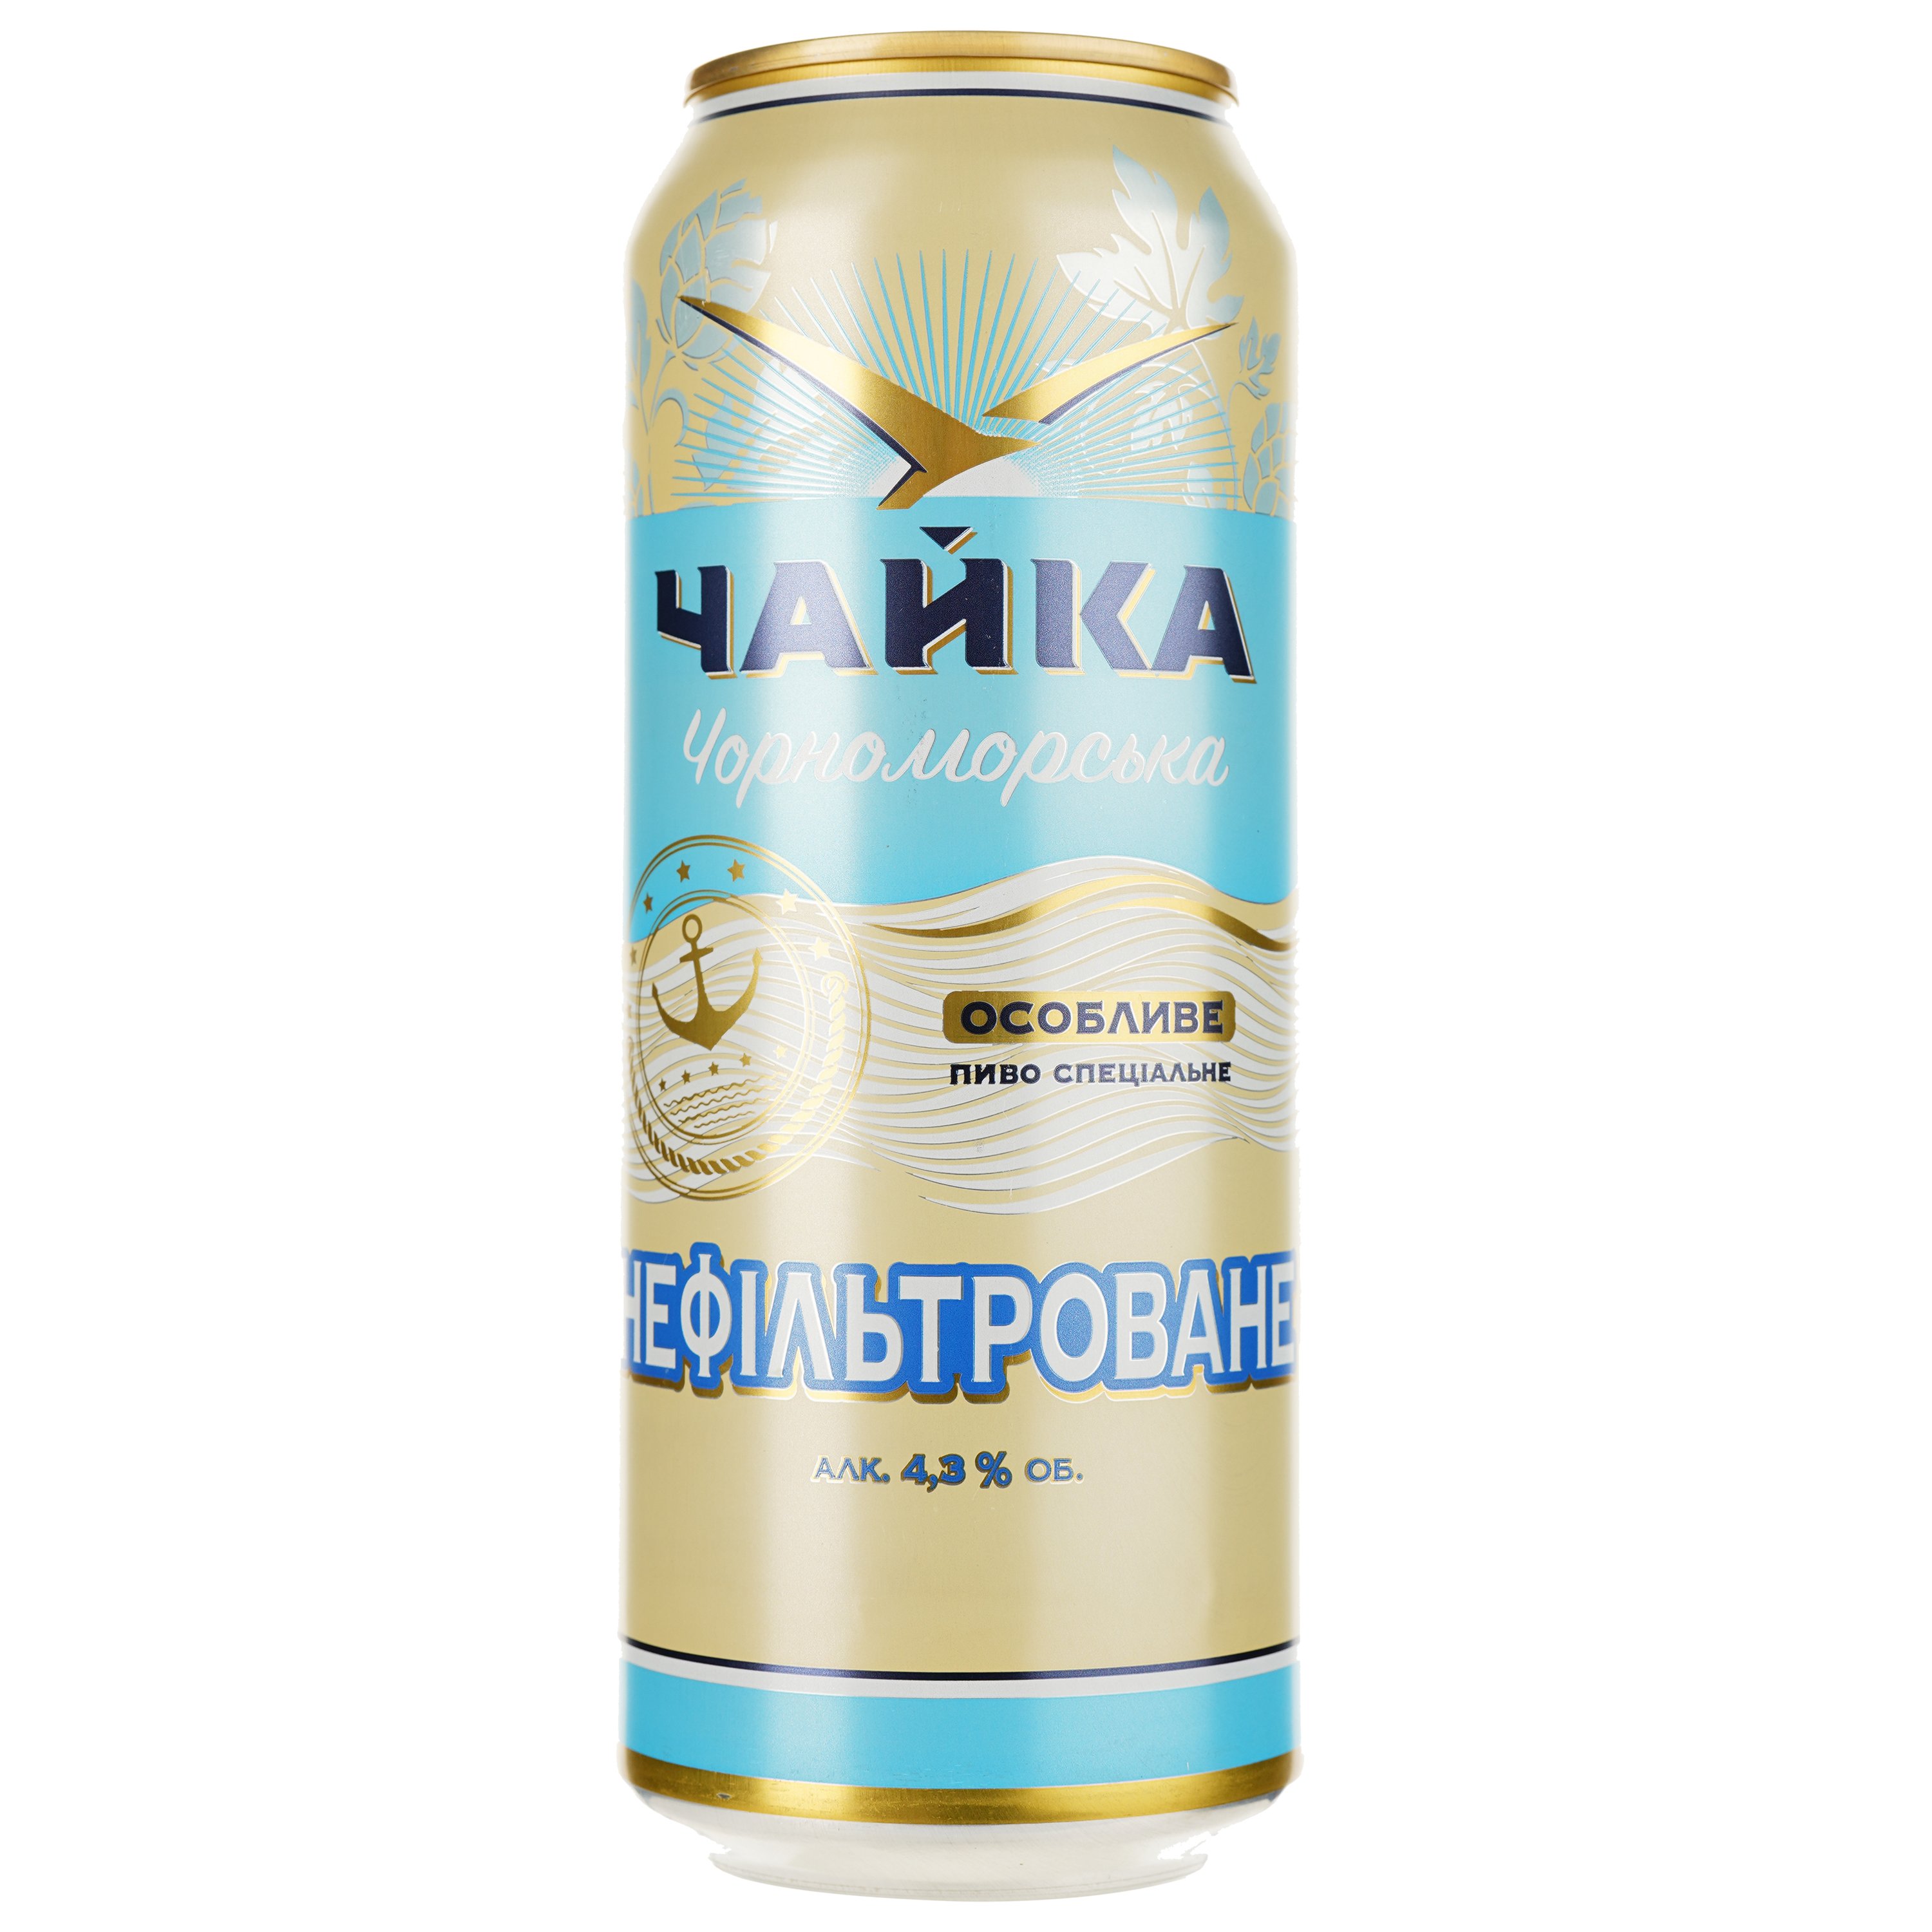 Пиво Чайка Чорноморська Особливе, світле, 4,3%, з/б, 0,5 л - фото 1